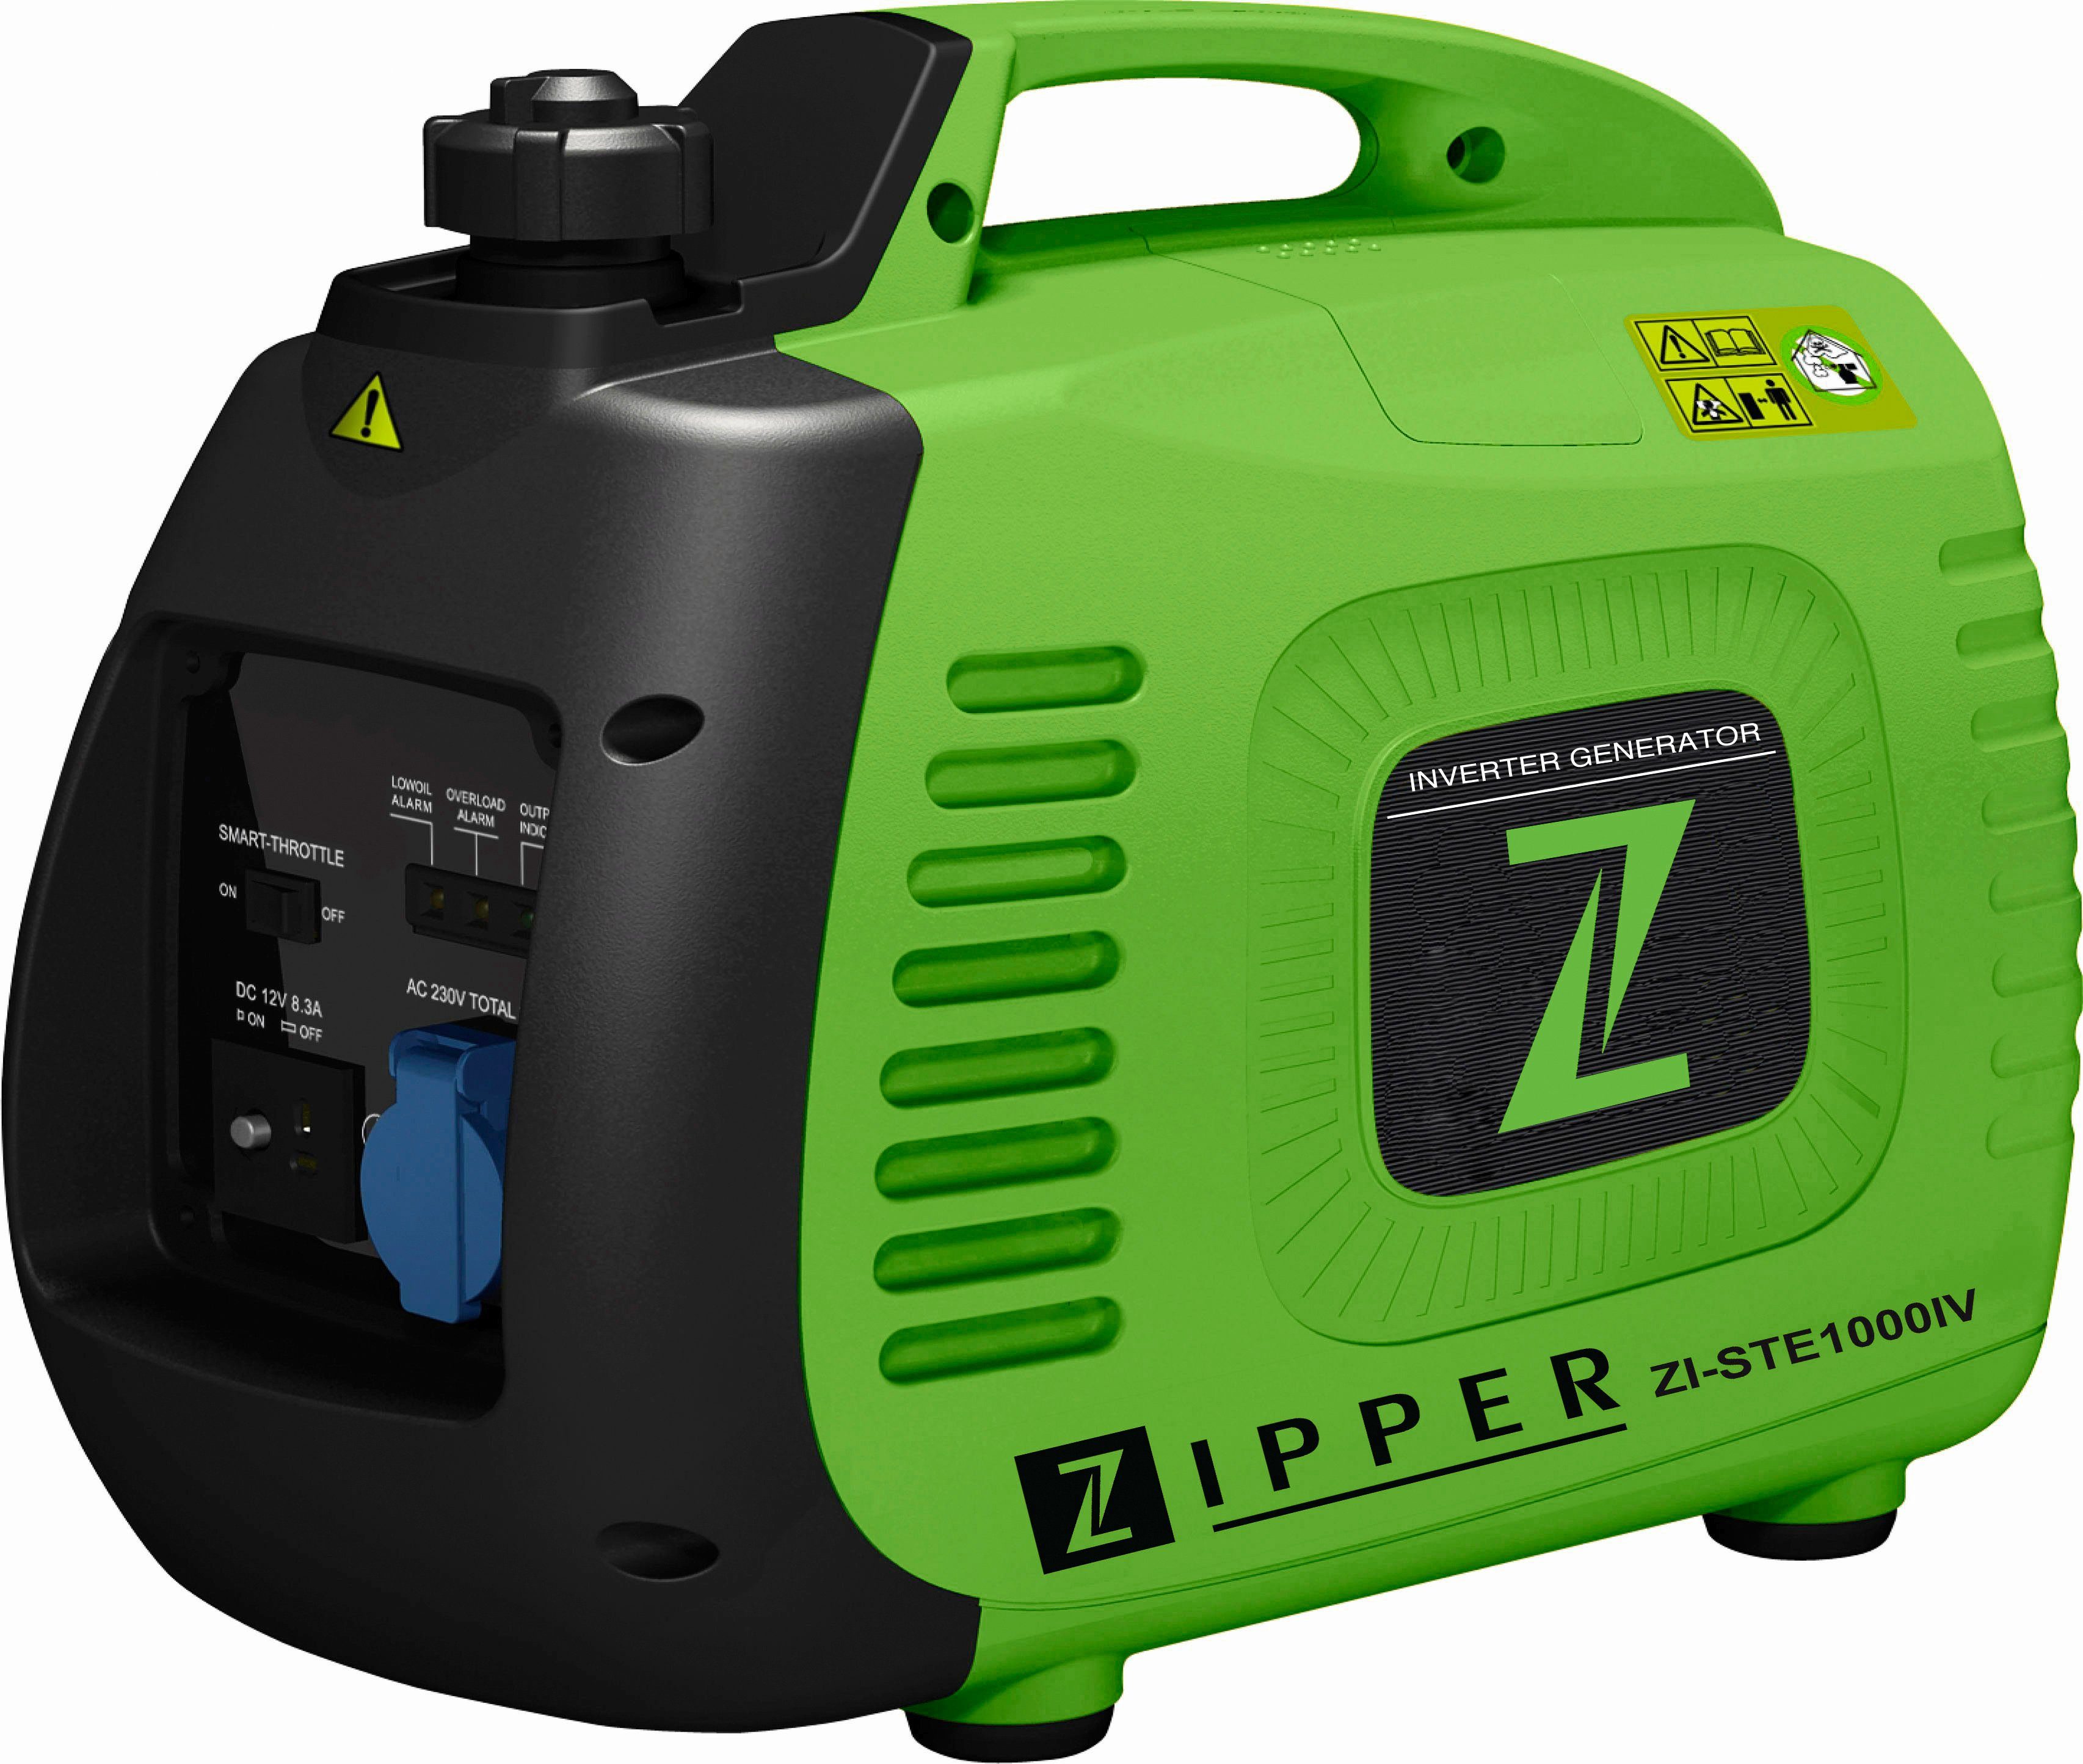 Zipper Stromerzeuger »ZI-STE 1000 IV« kaufen | OTTO